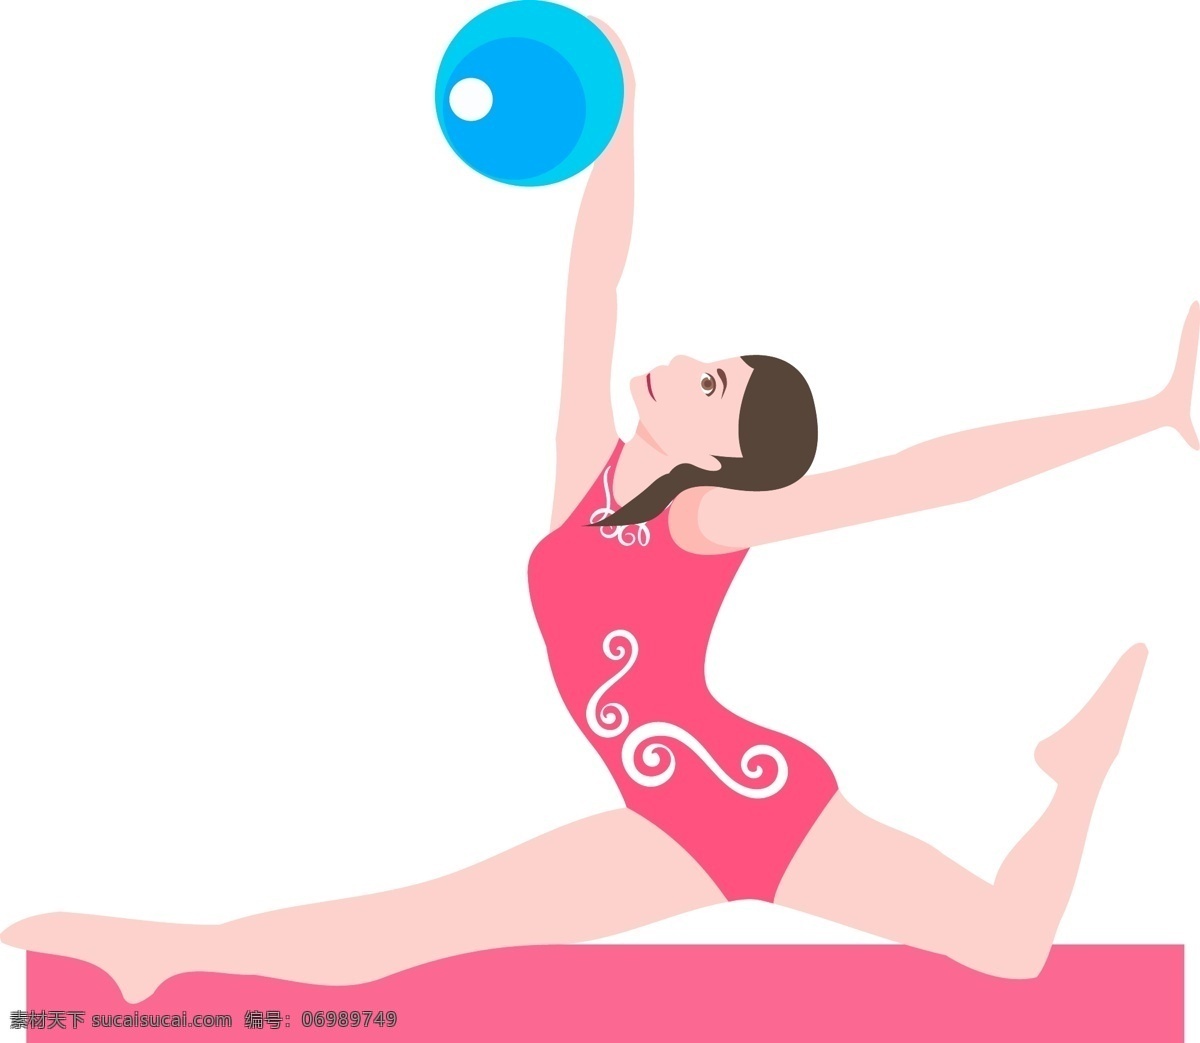 免 扣 卡通 人物 瑜伽 身材 动作 健身 女性 姿势 女孩 美女 躯体 体育 运动 健康 曲线 背影 锻炼 弯曲 抬腿 柔韧